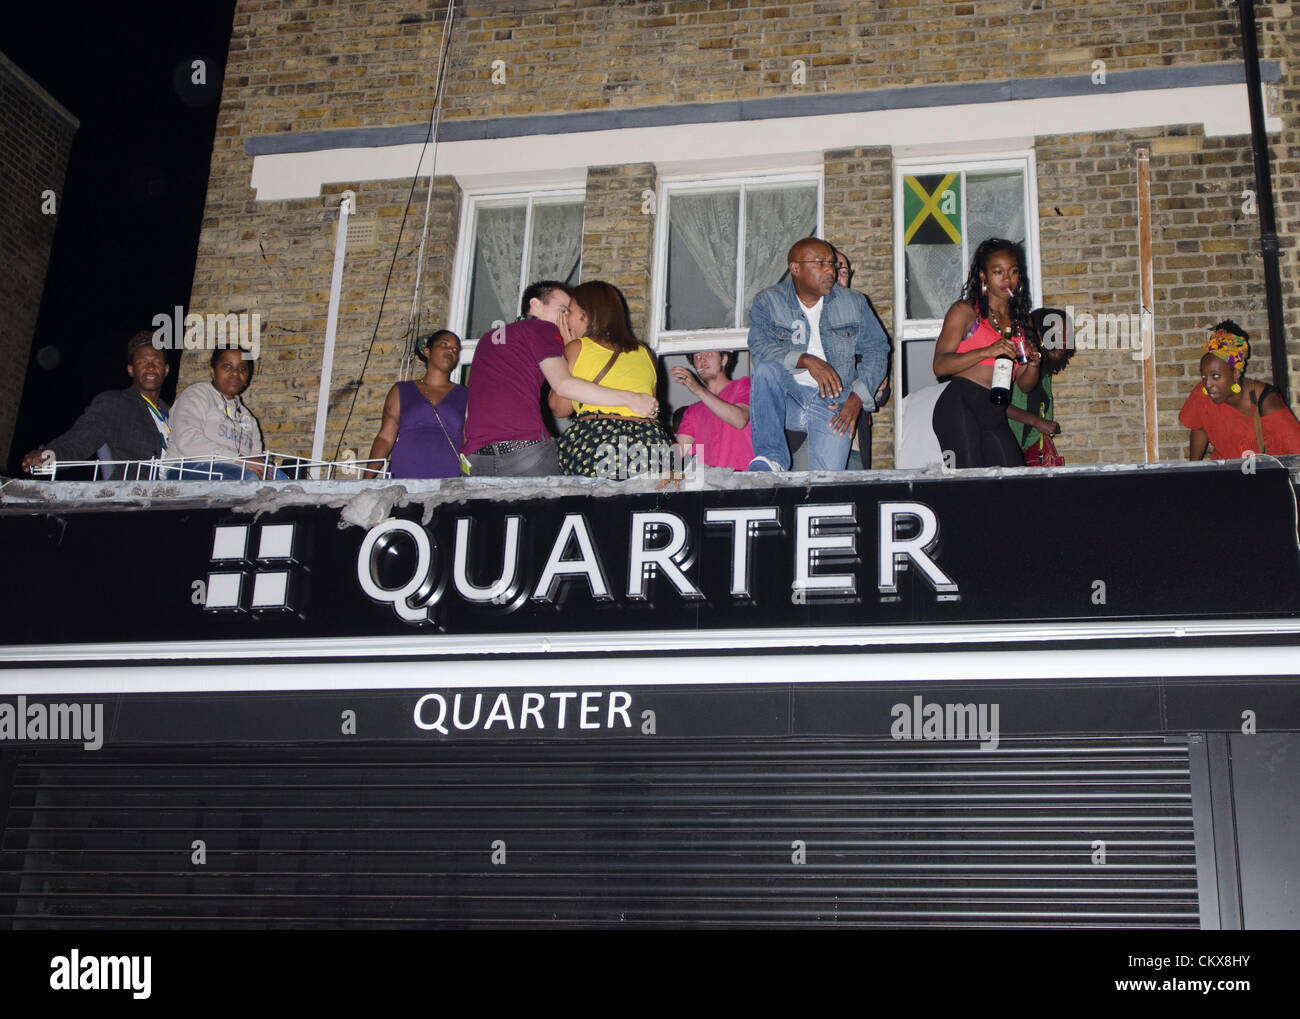 Revelers parti sur balcon plus shop Notting Hill Carnival street at night London Uk Trimestre Banque D'Images